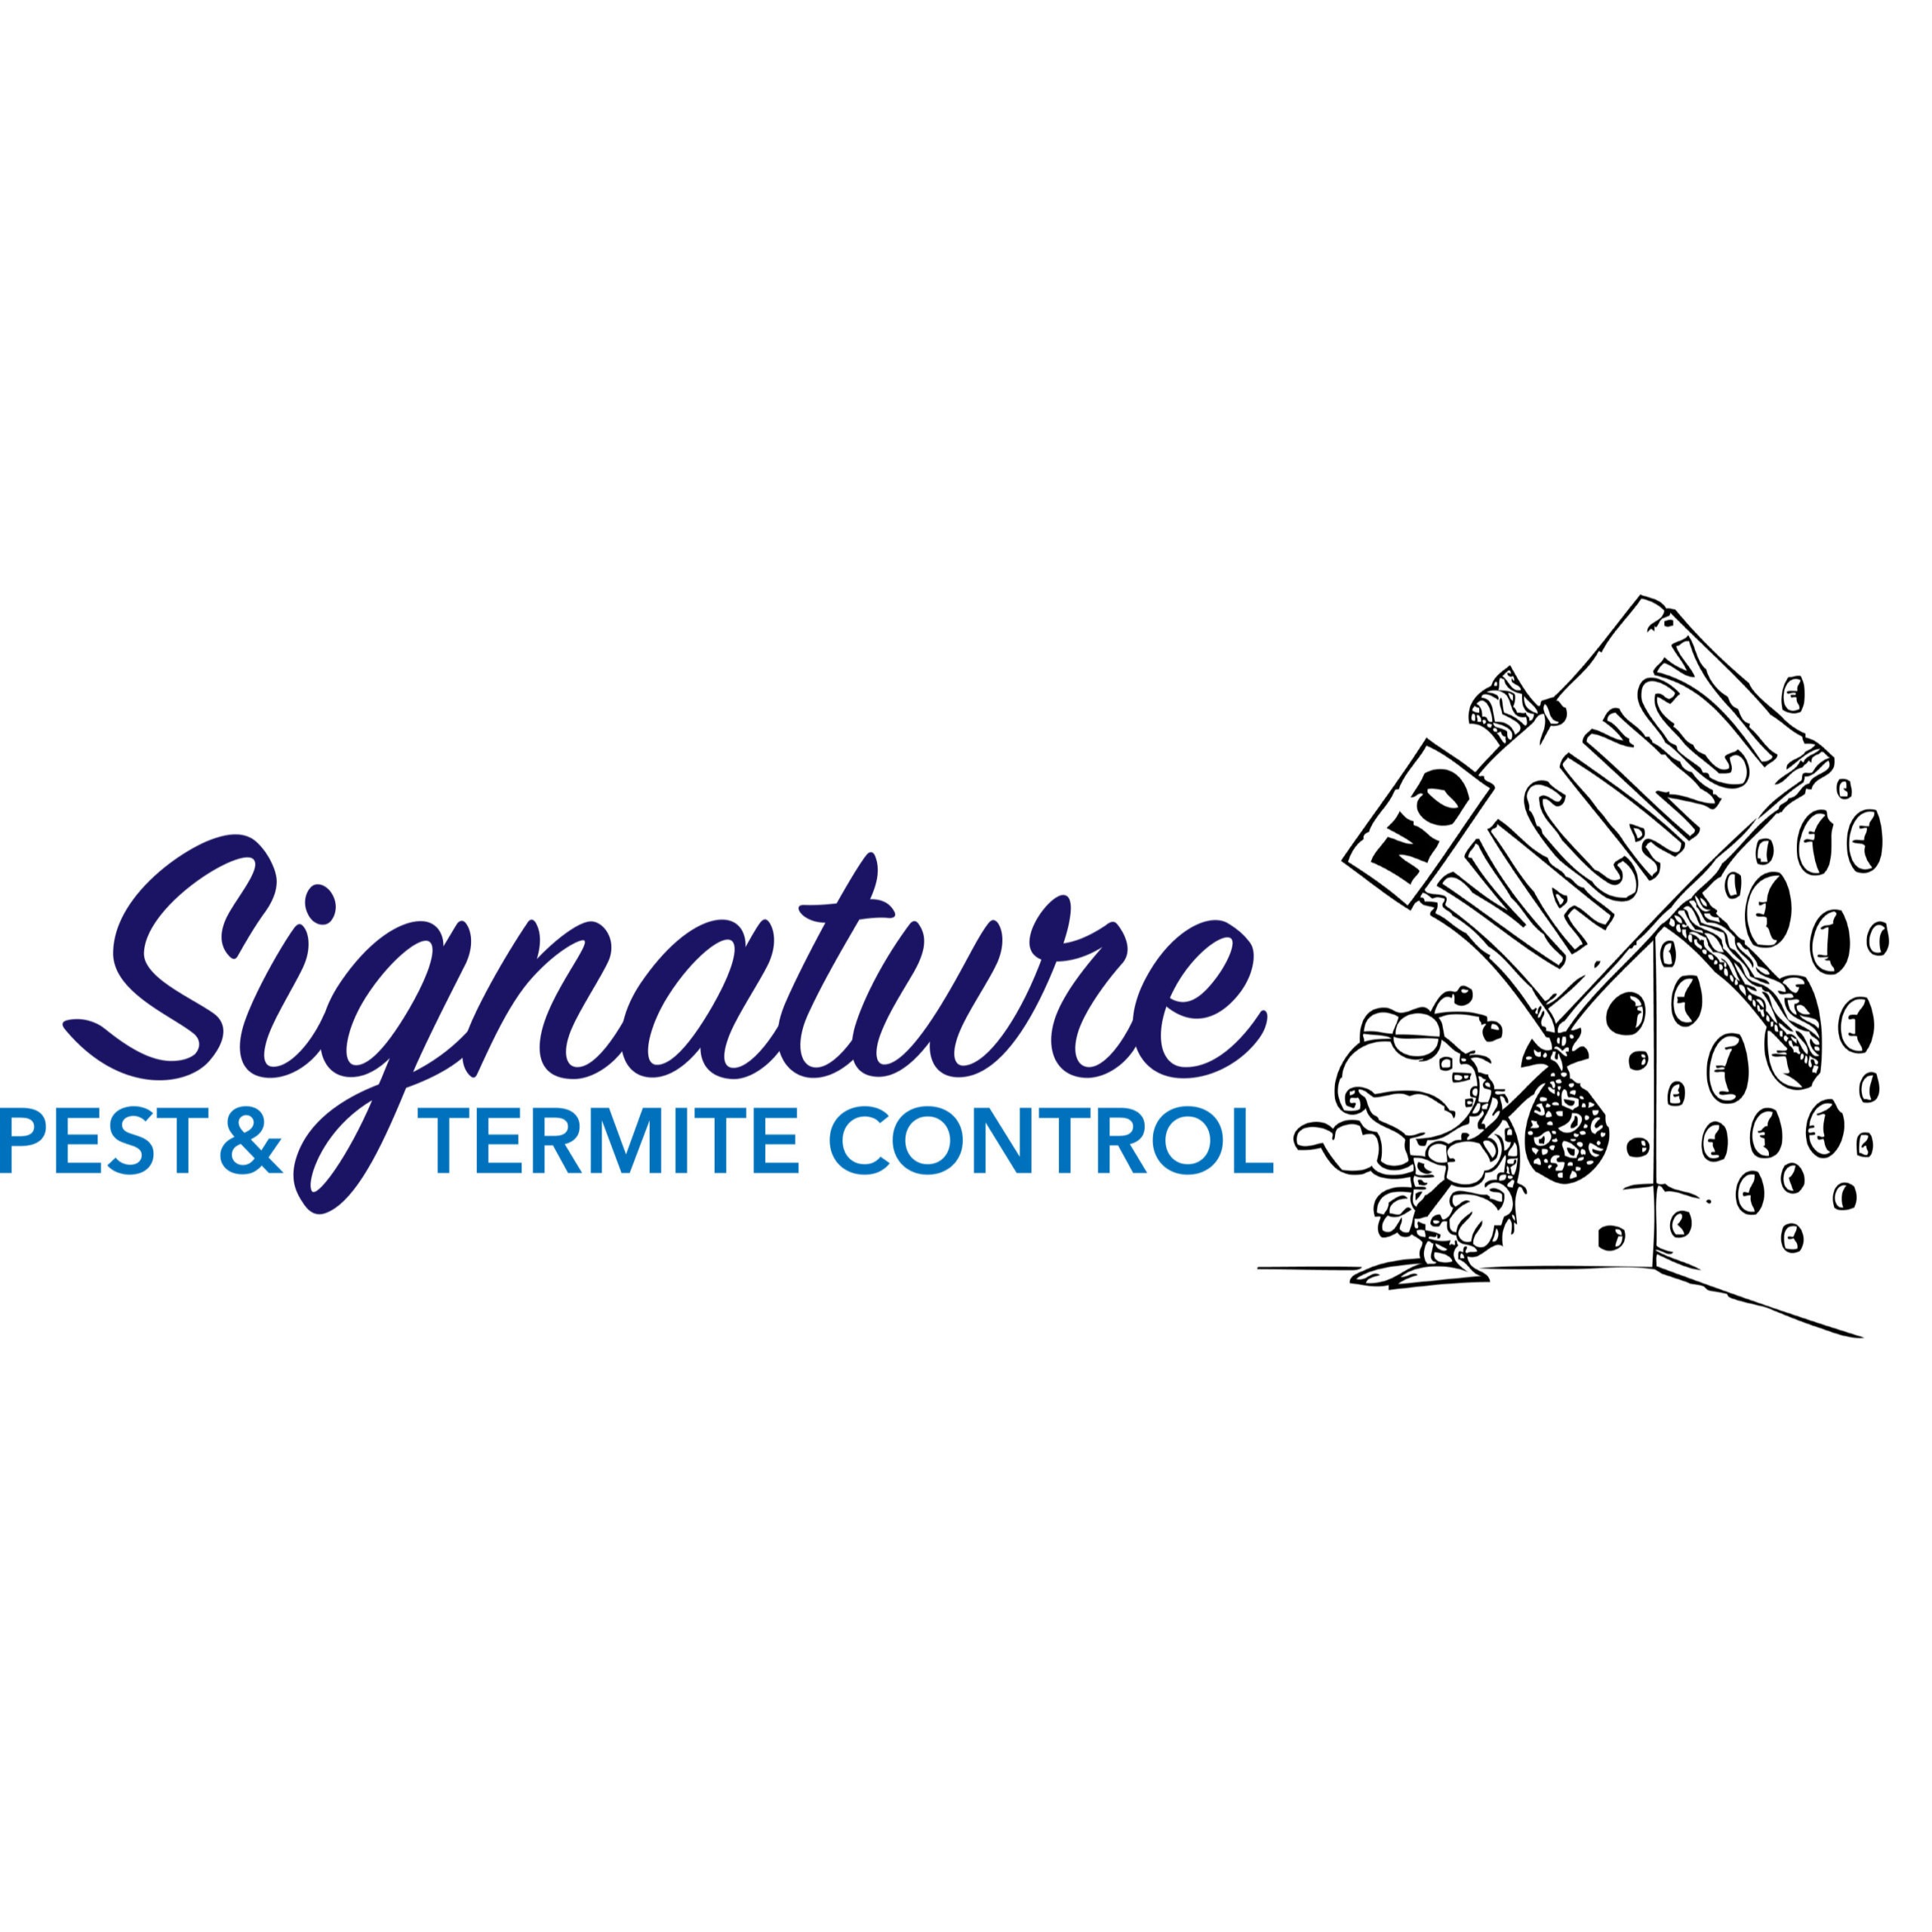 Signature Pest & Termite Control